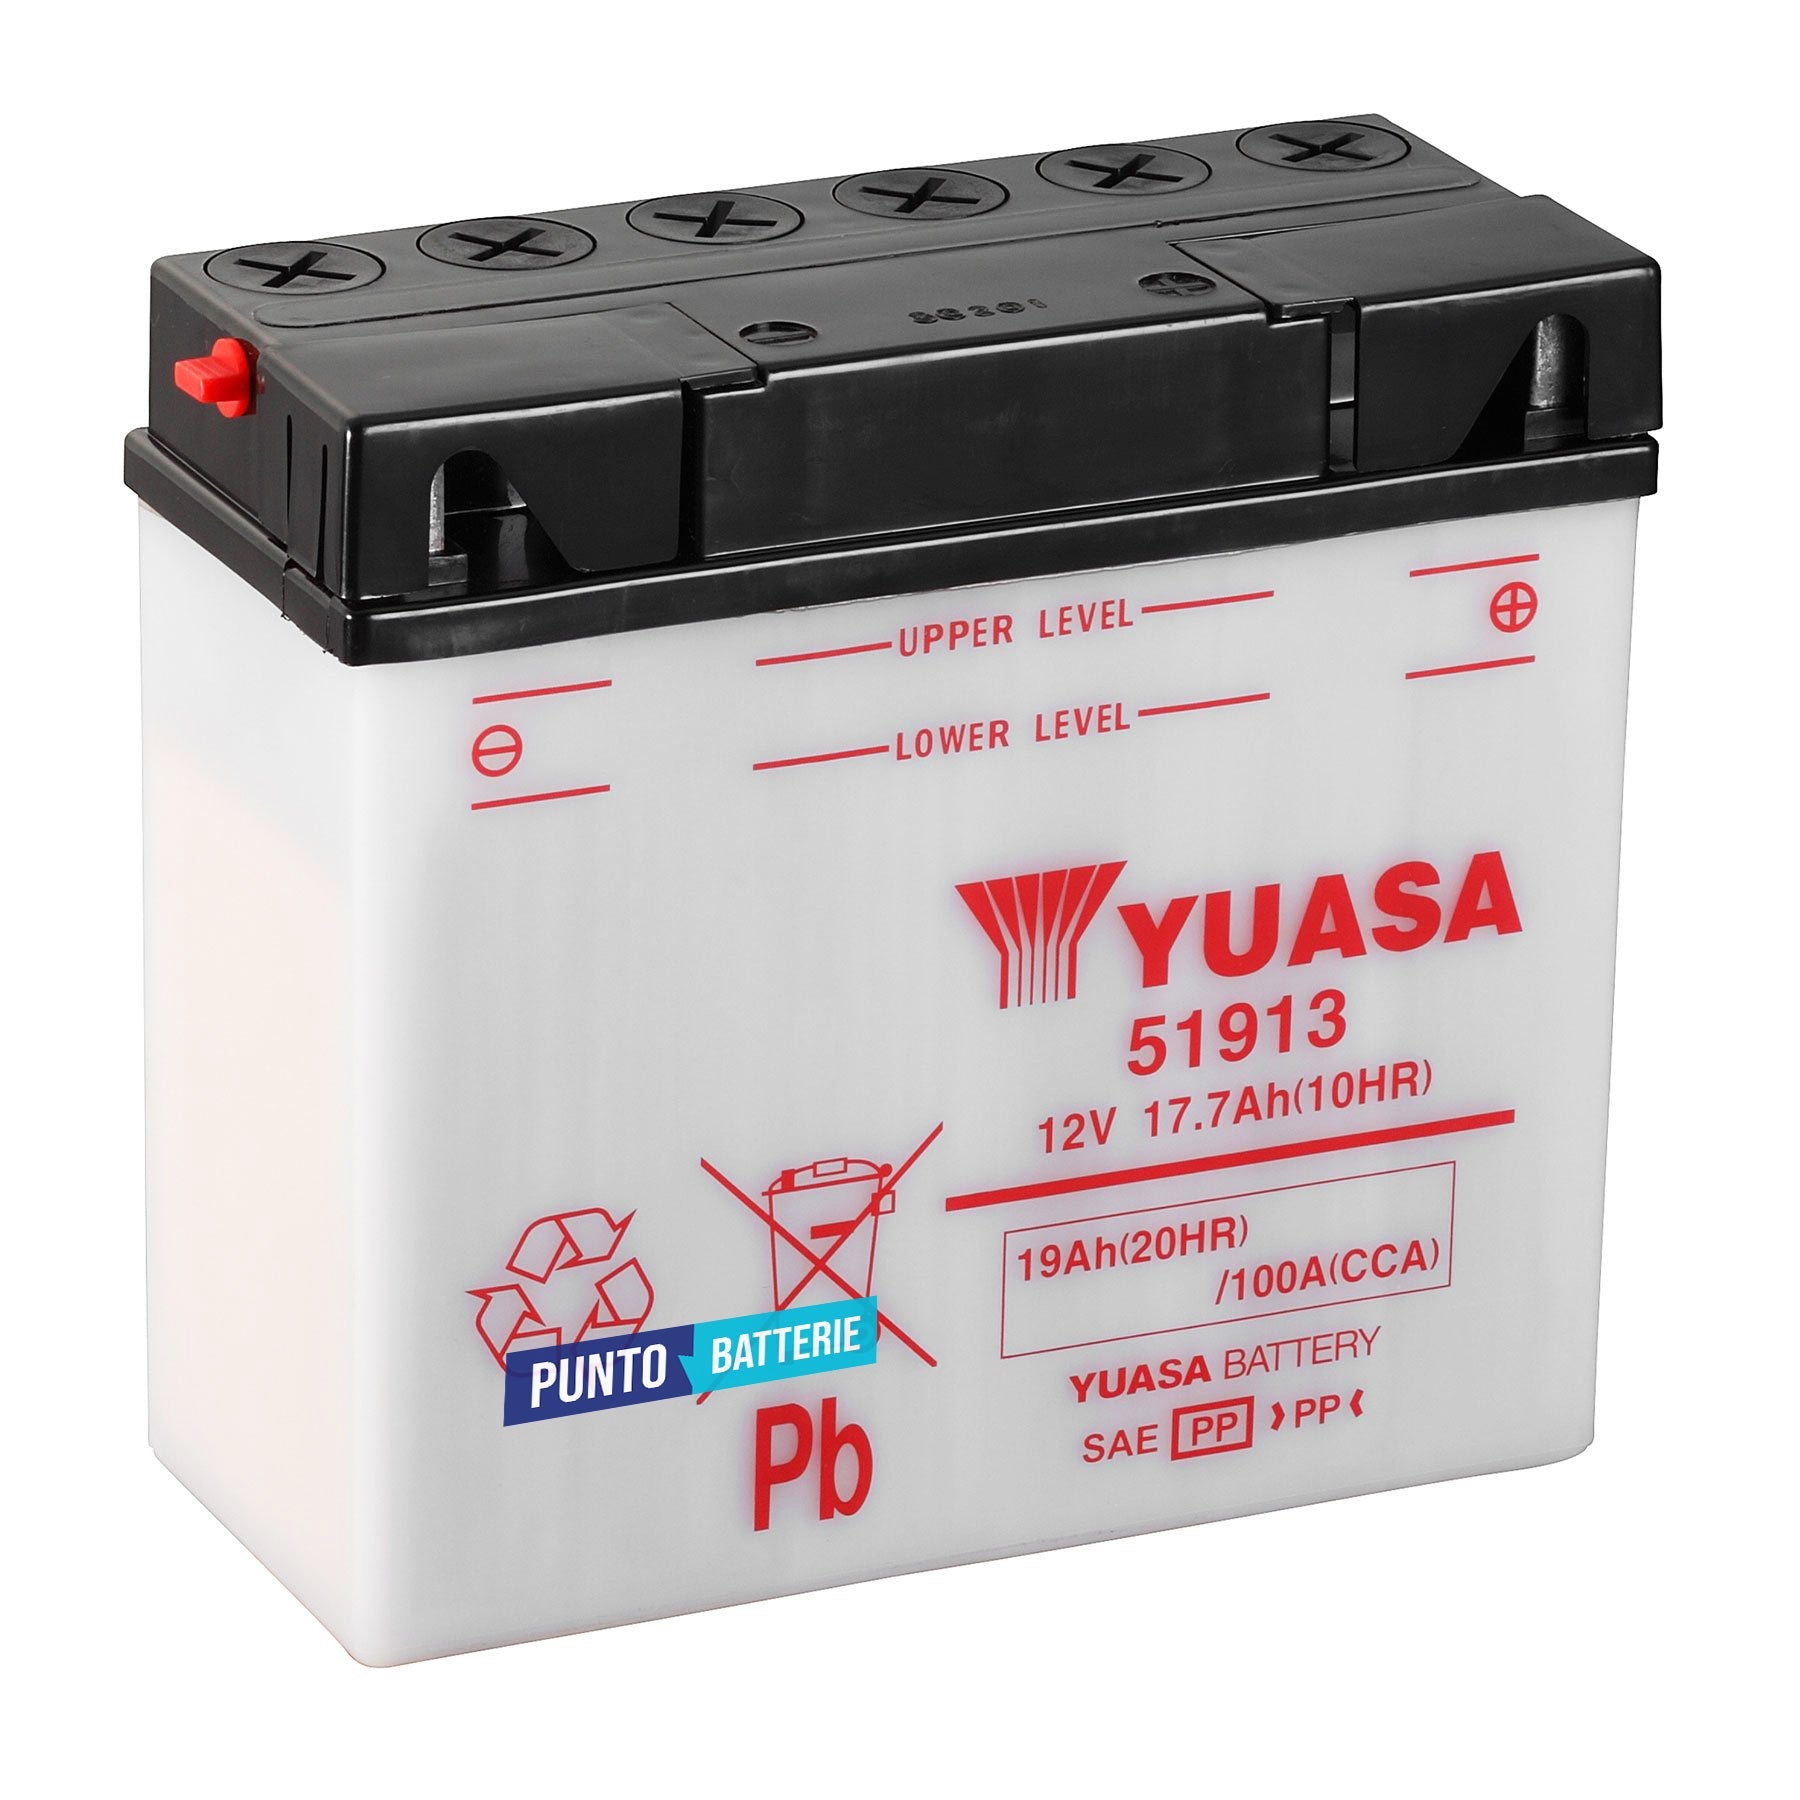 Batteria originale Yuasa YuMicron 51913, dimensioni 186 x 82 x 171, polo positivo a destra, 12 volt, 17 amperora, 100 ampere. Batteria per moto, scooter e powersport.